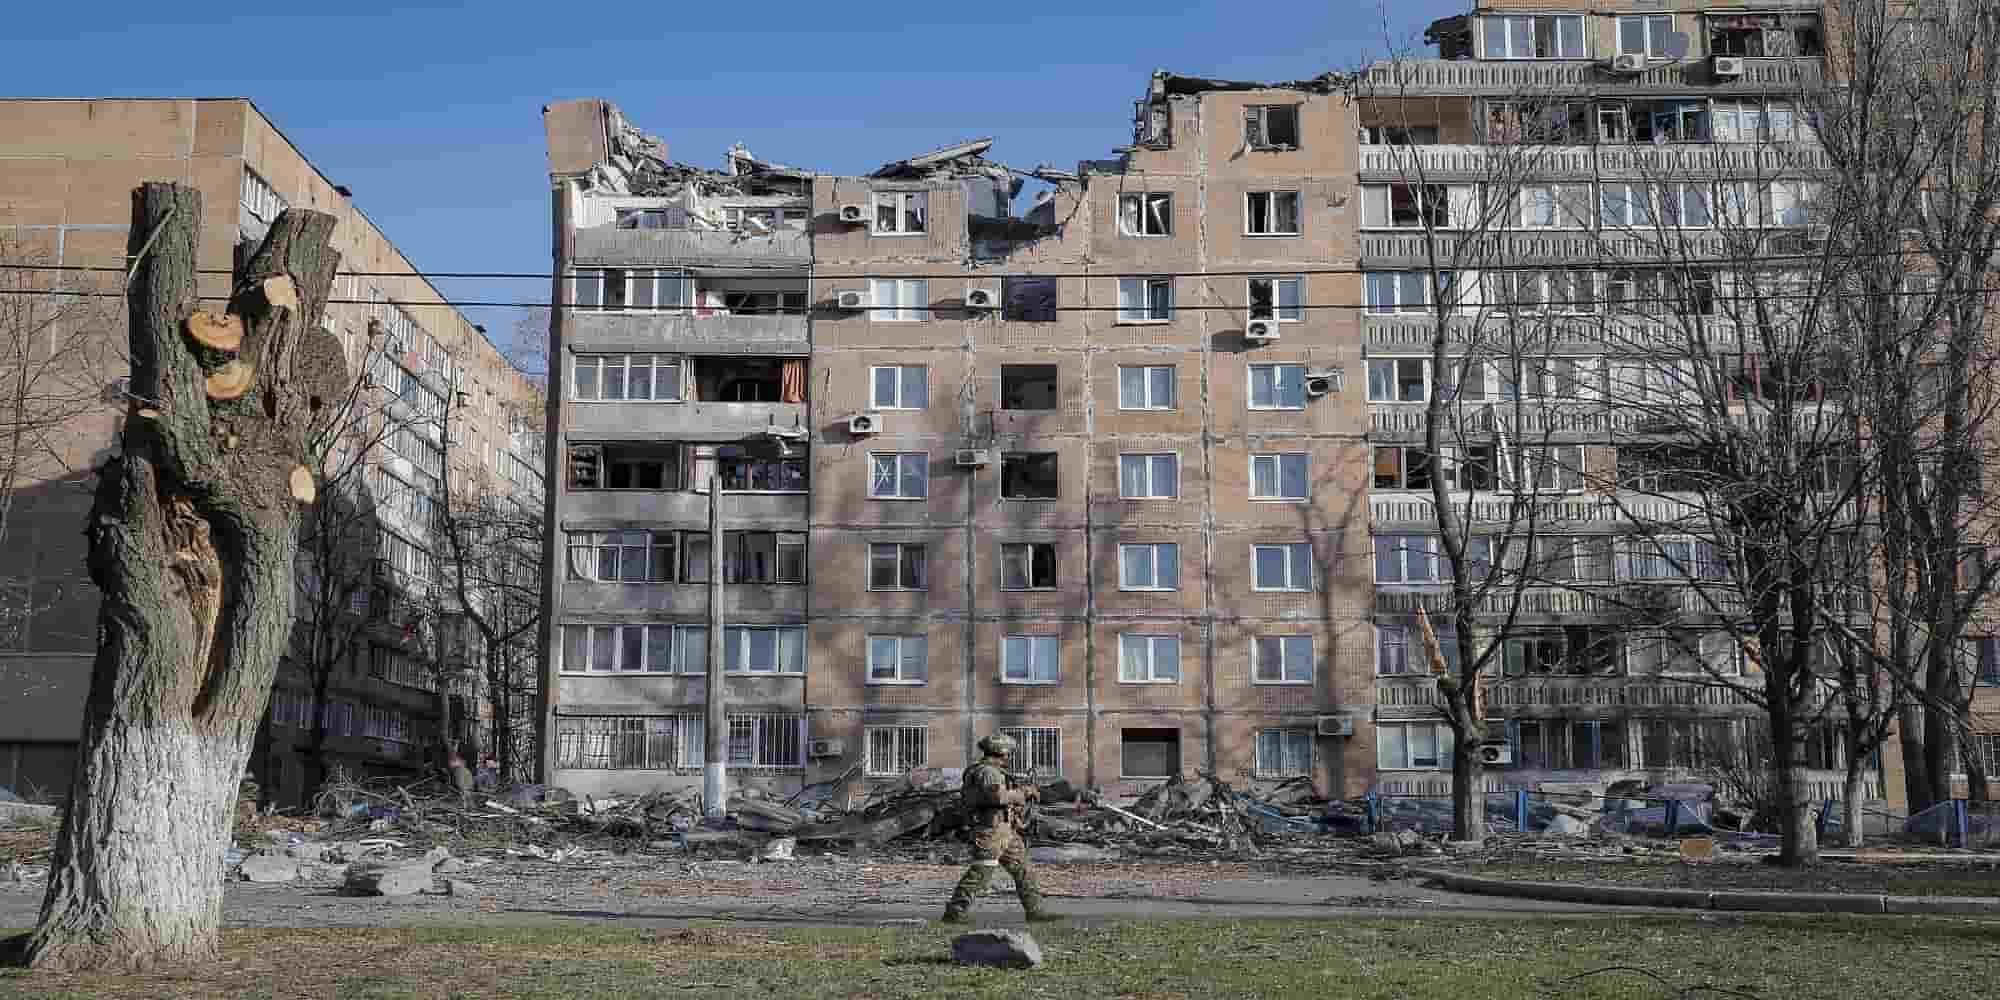 Ρώσος στρατιώτης περπατά μπροστά από κατεστραμμένες πολυκατοικίες που καταστράφηκαν κατά τον βομβαρδισμό στο Ντονέτσκ στην Ουκρανία